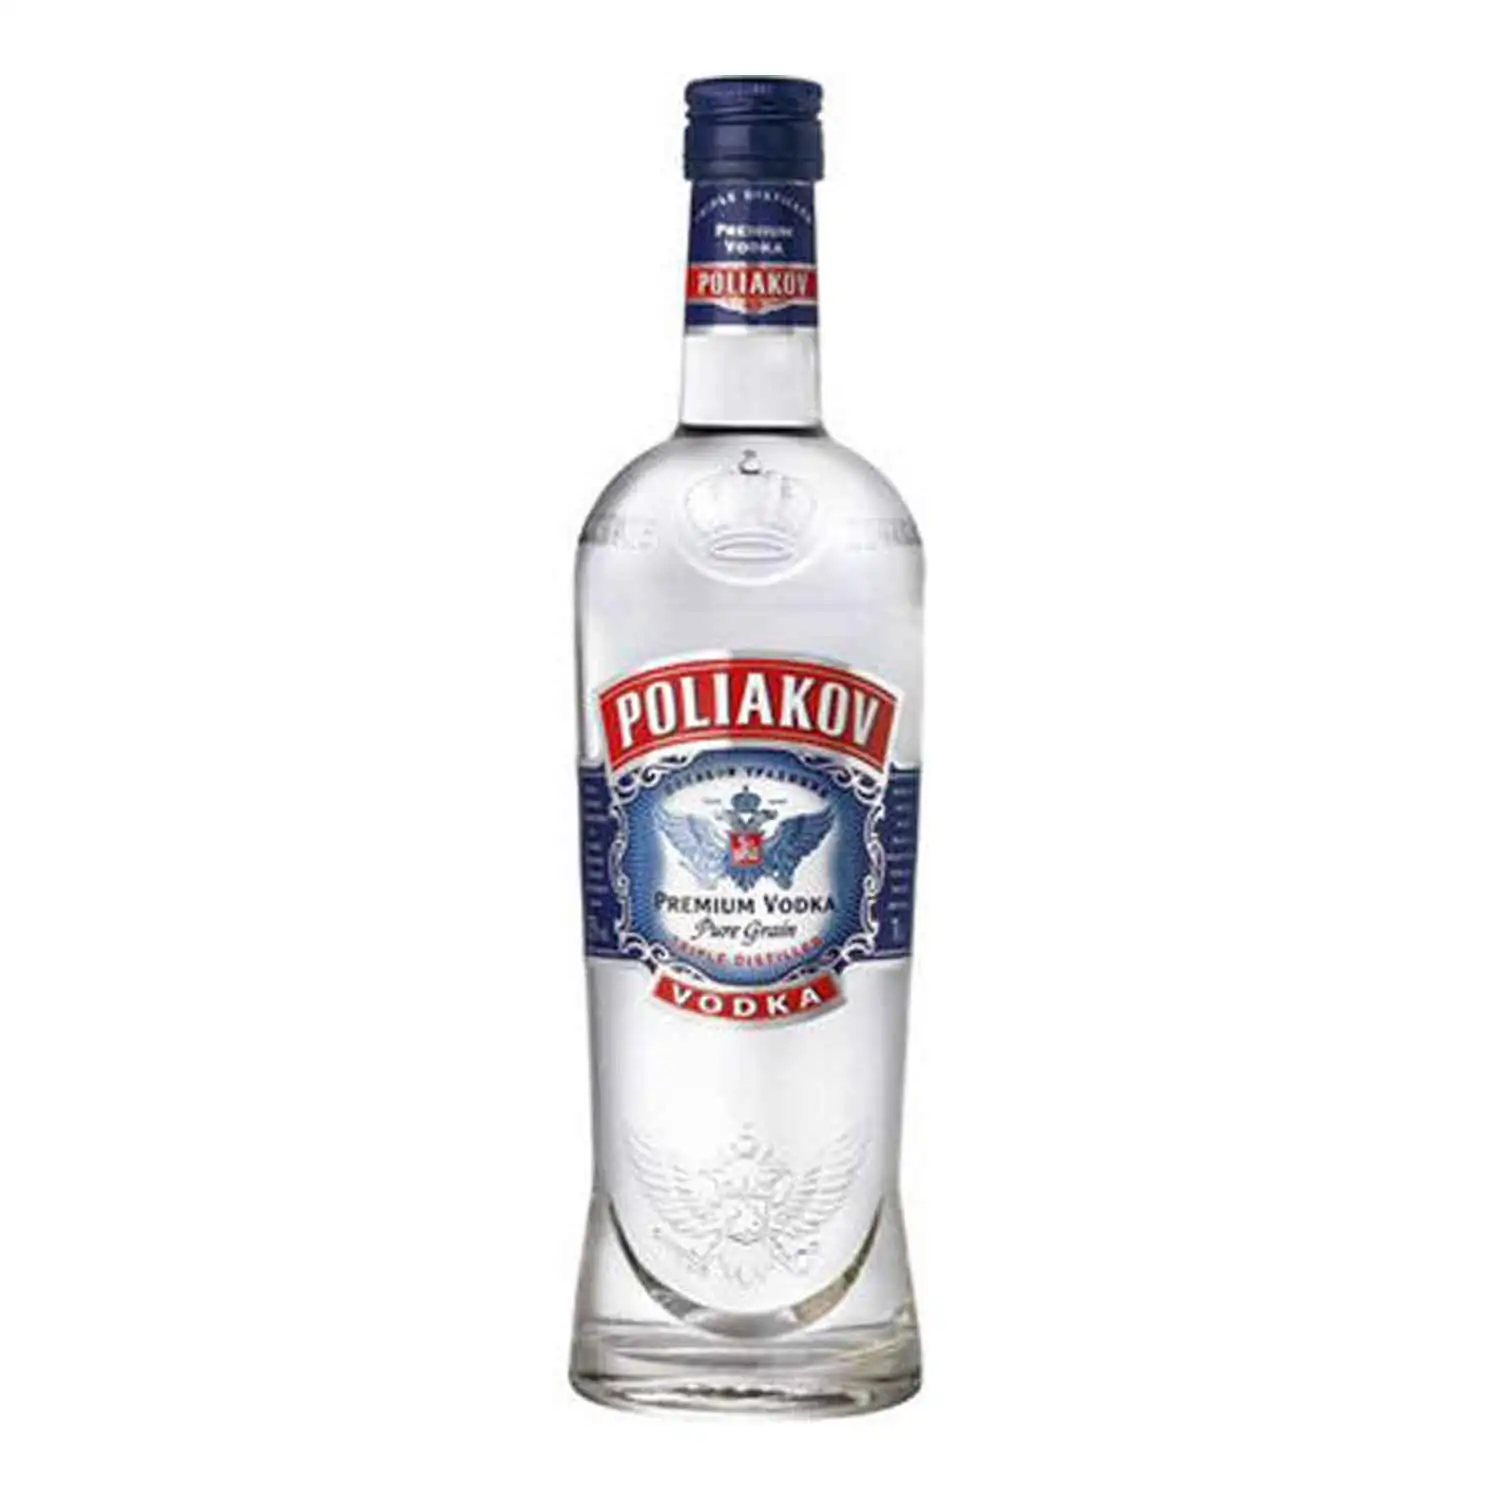 Poliakov vodka 70cl Alc 37,5%